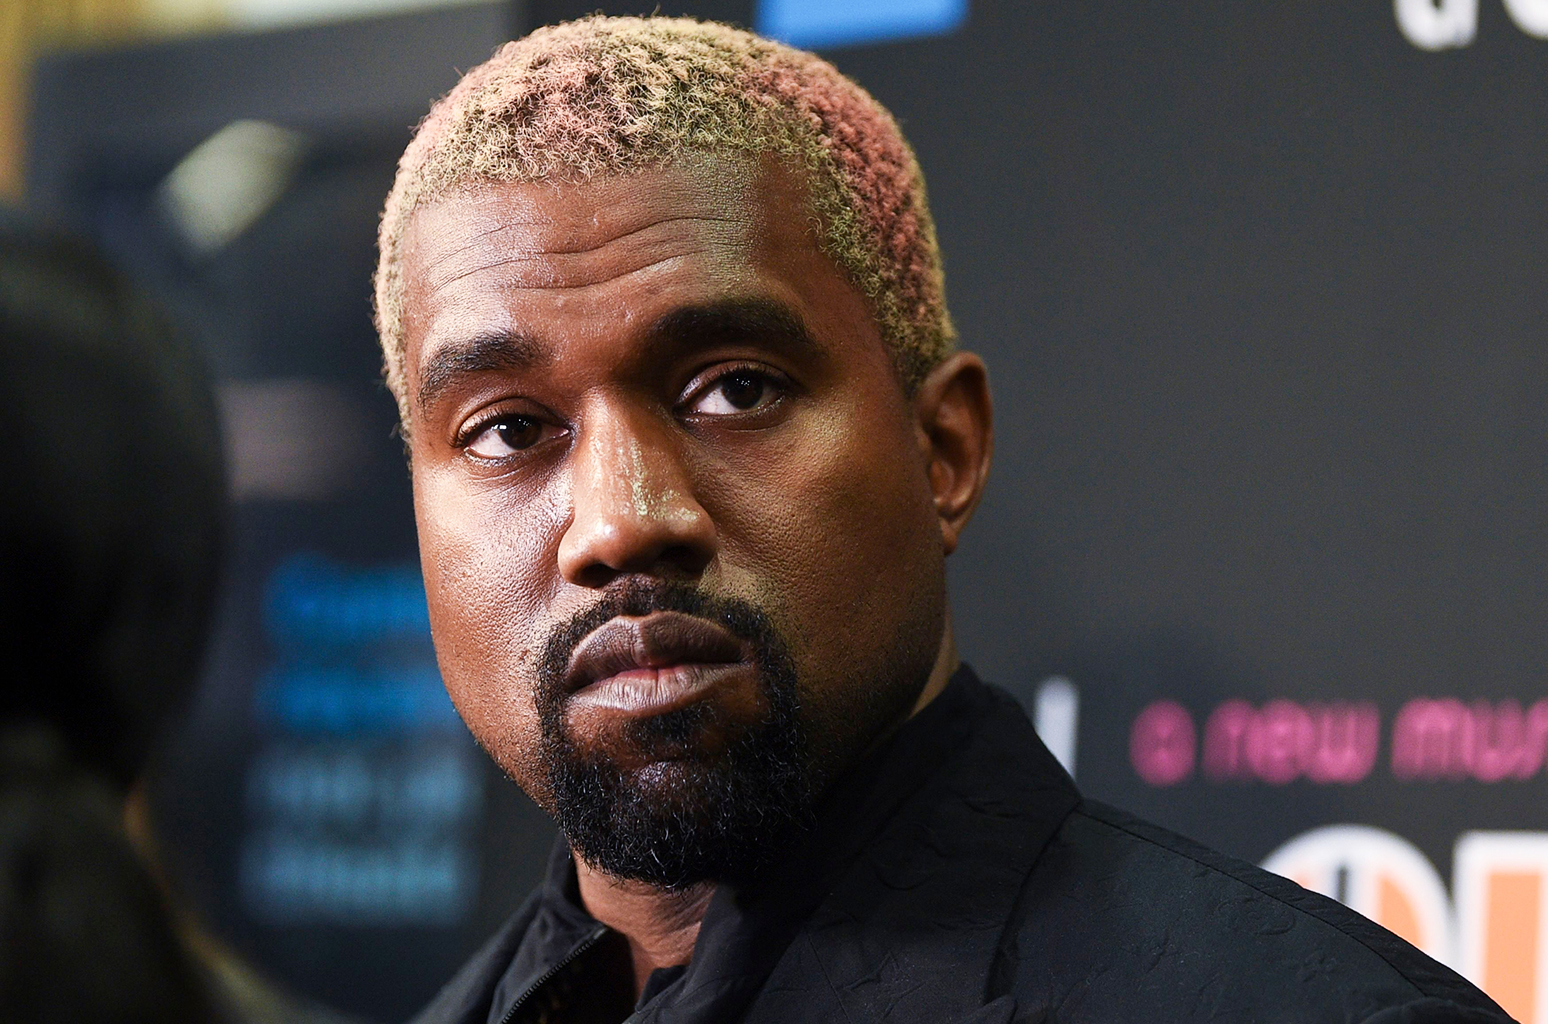 Kanye West rechazó presentarse en el Coachella, por no tener una tarima gigante para él. Cusica Plus.